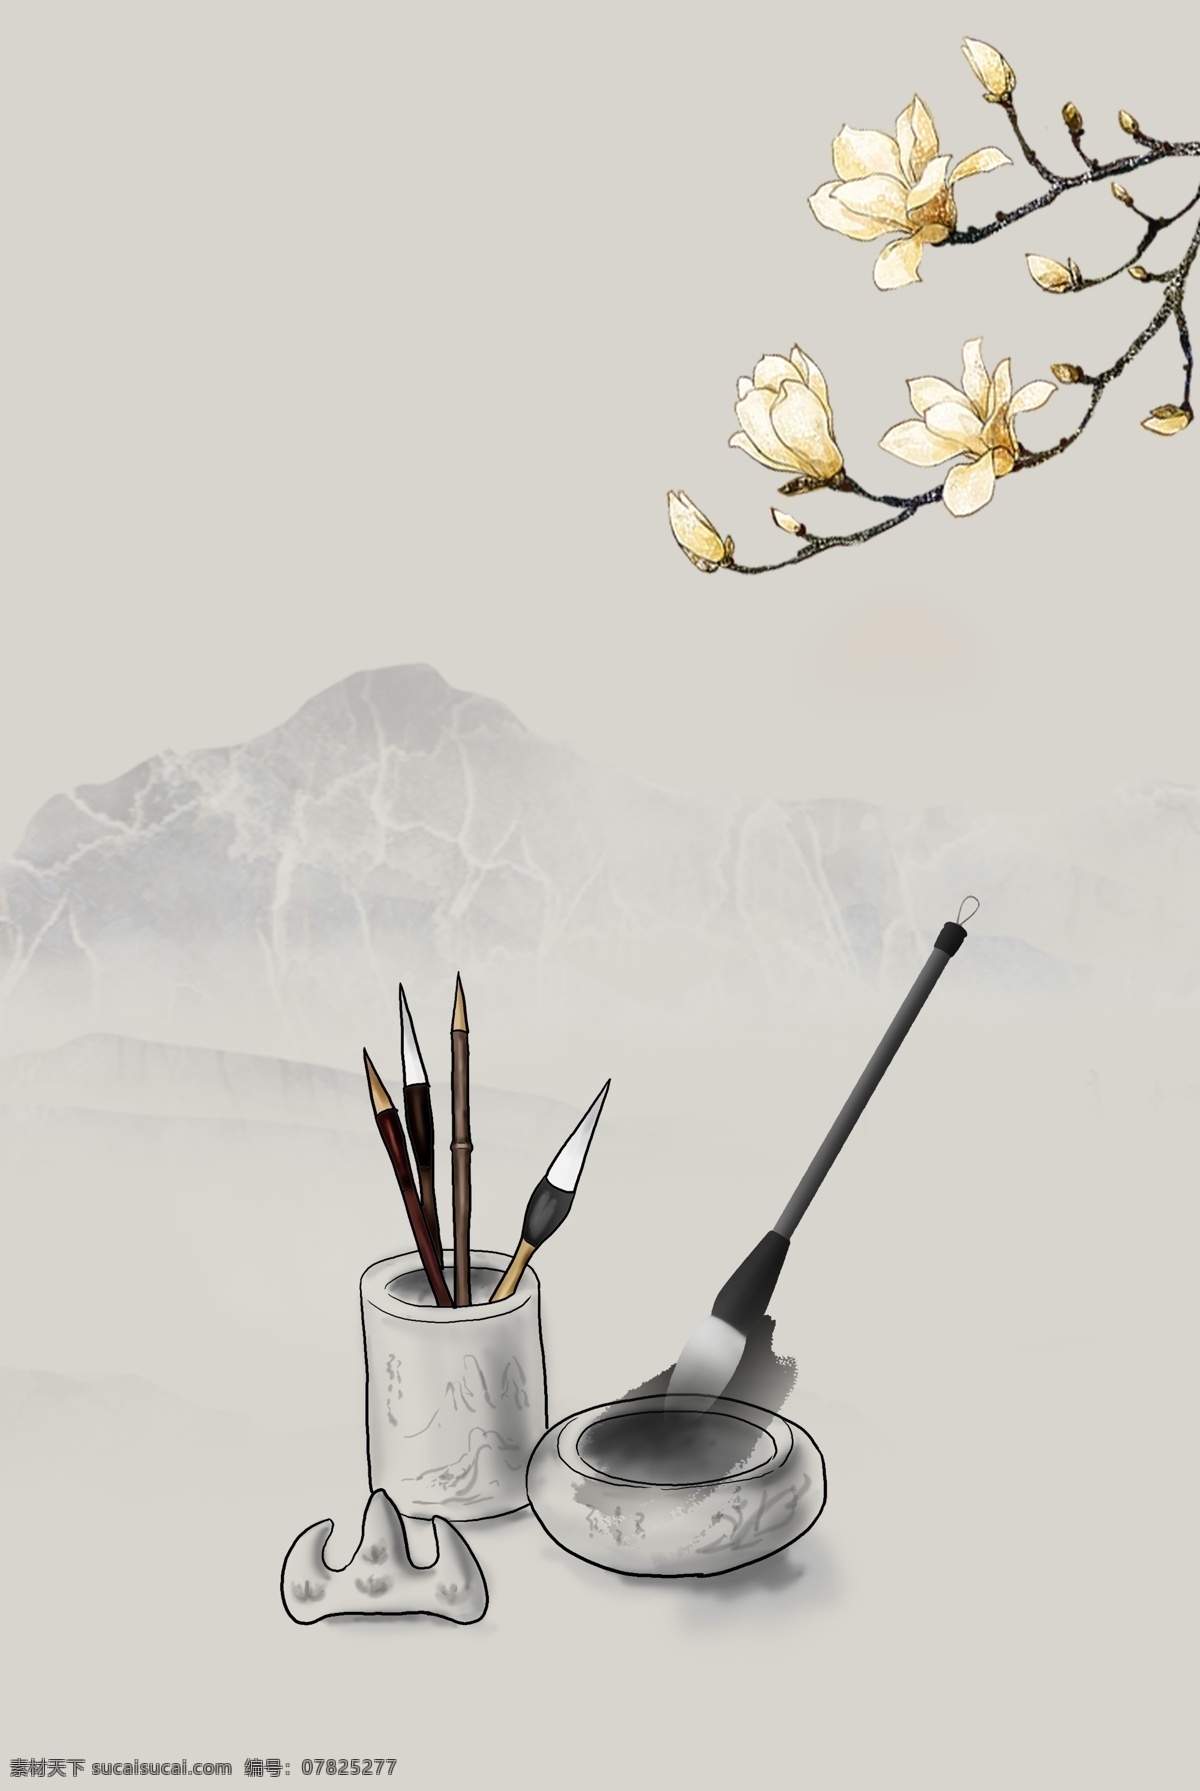 桃花 典雅 砚台 毛笔 背景 山水 水墨 中国风 复古 大气 简约 笔墨 传统